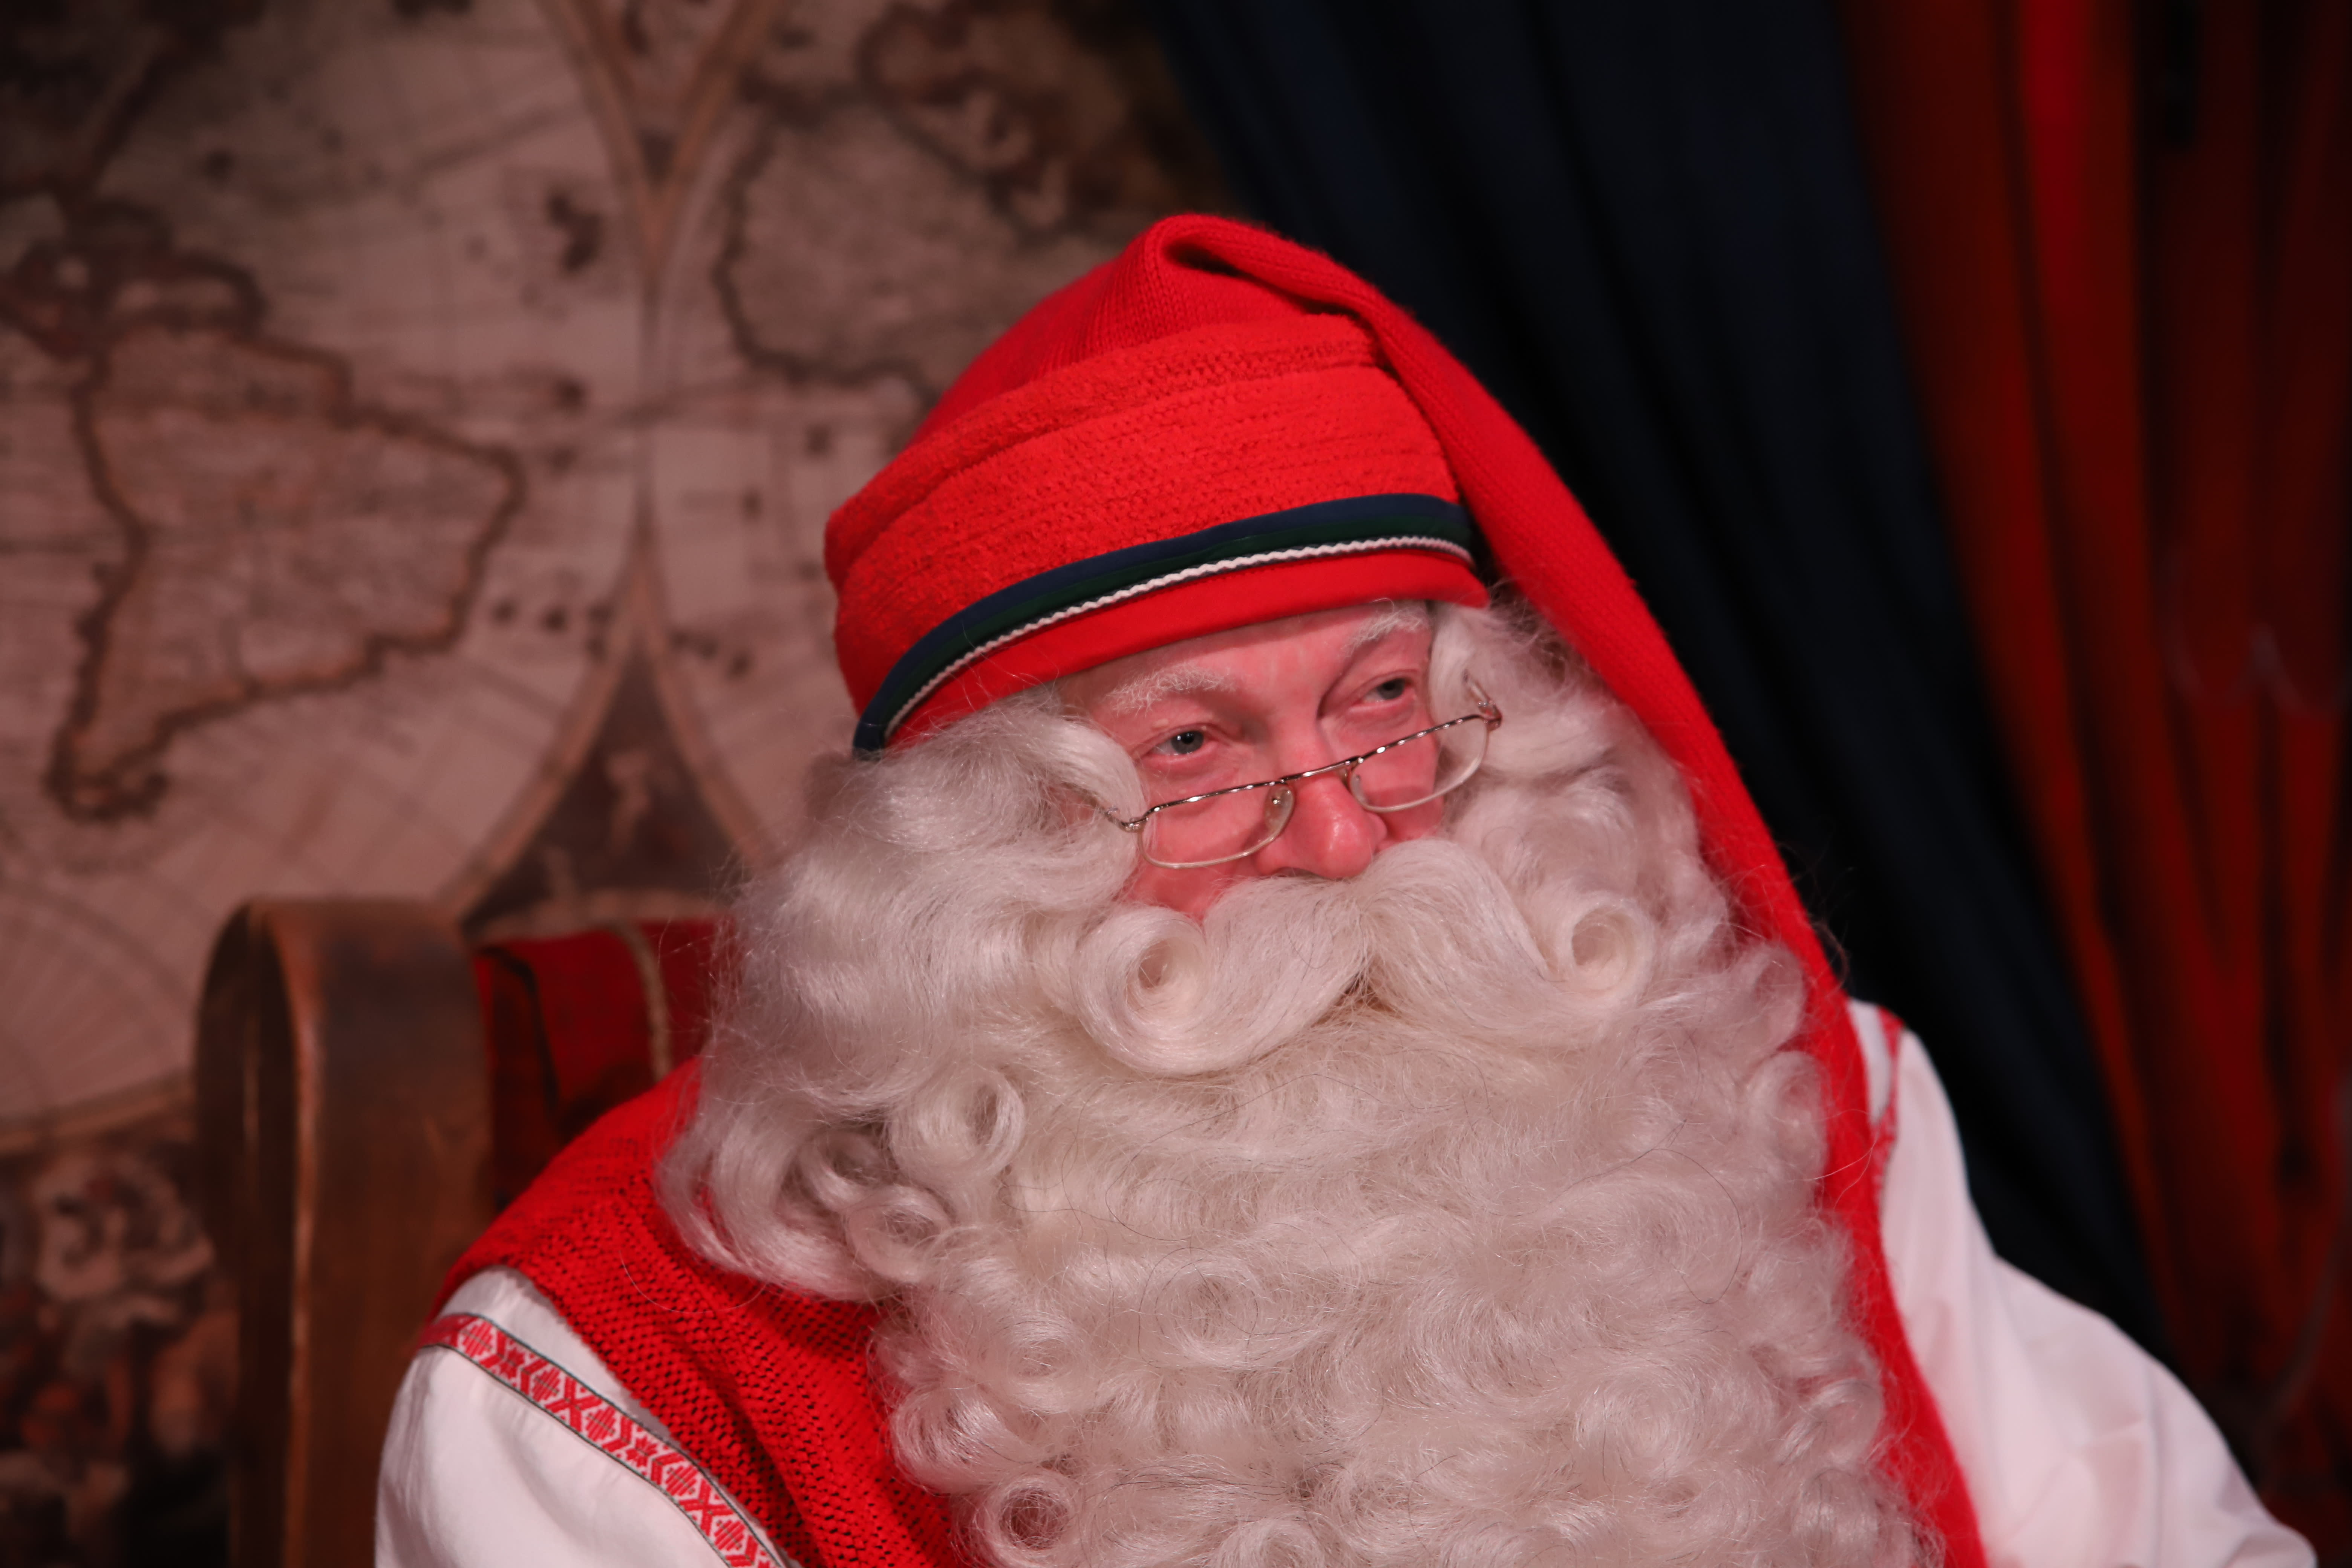 Finnair offers VR flights to meet Santa Claus in Lapland